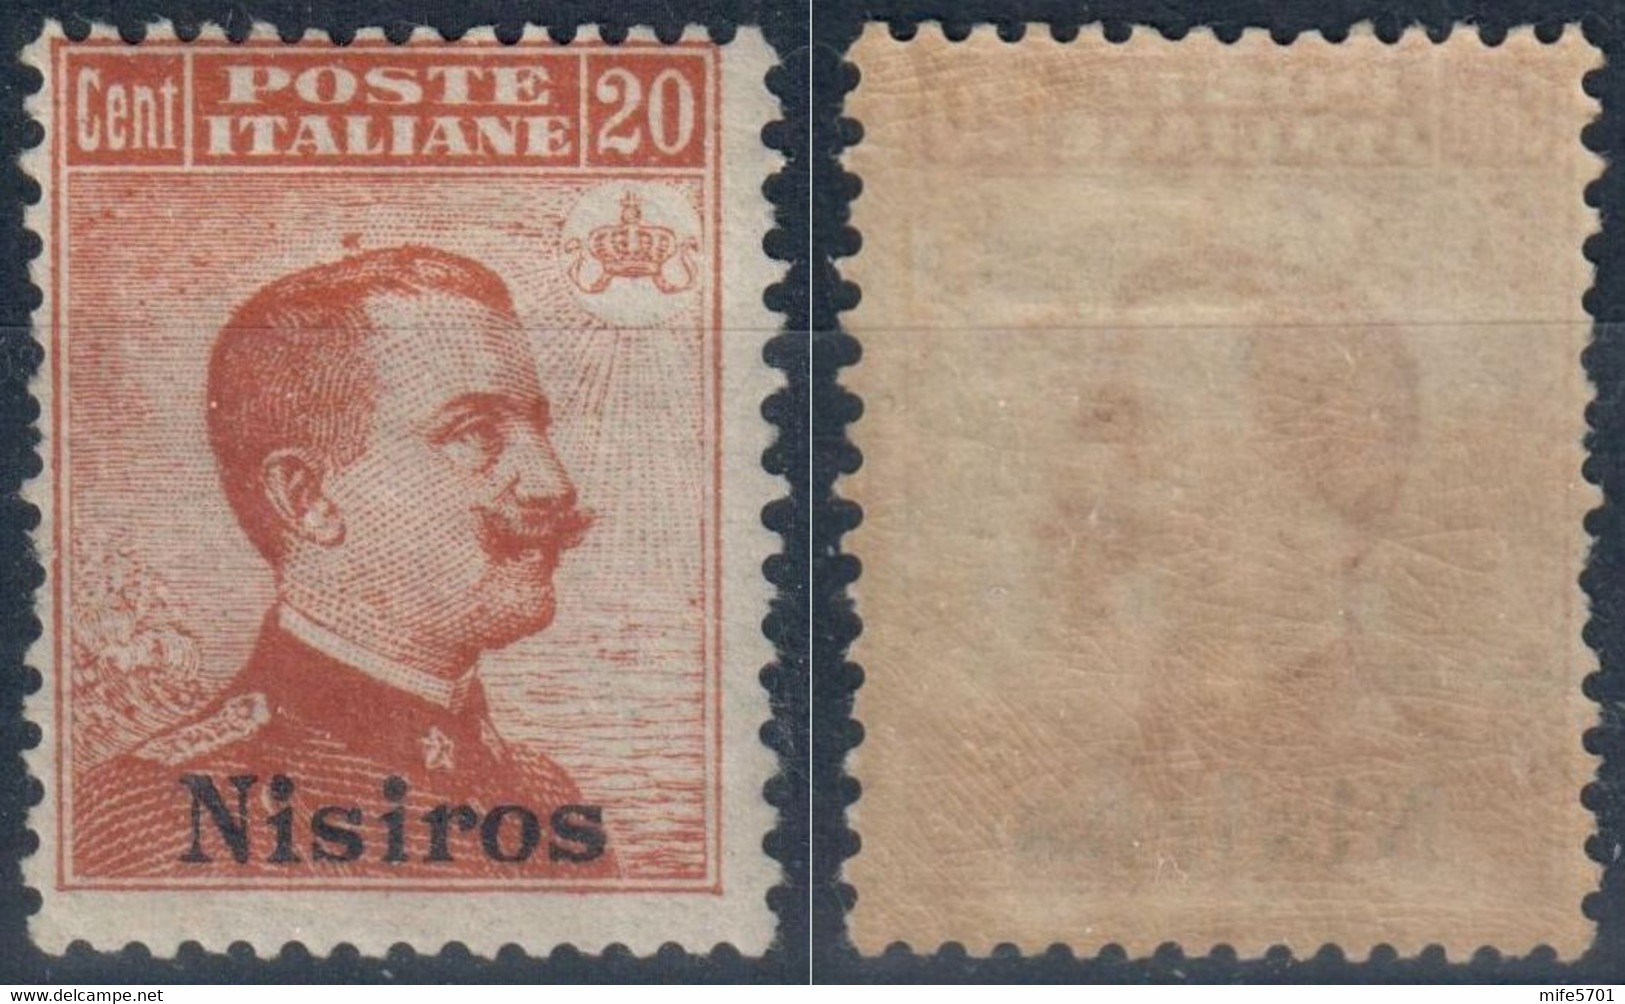 REGNO D'ITALIA COLONIA NISIRO / NISIROS - 1917 - C. 20 ARANCIO - FRESCHISSIMO - NUOVO MNH ** - CATALOGO SASSONE NUMERO 9 - Egeo (Nisiro)